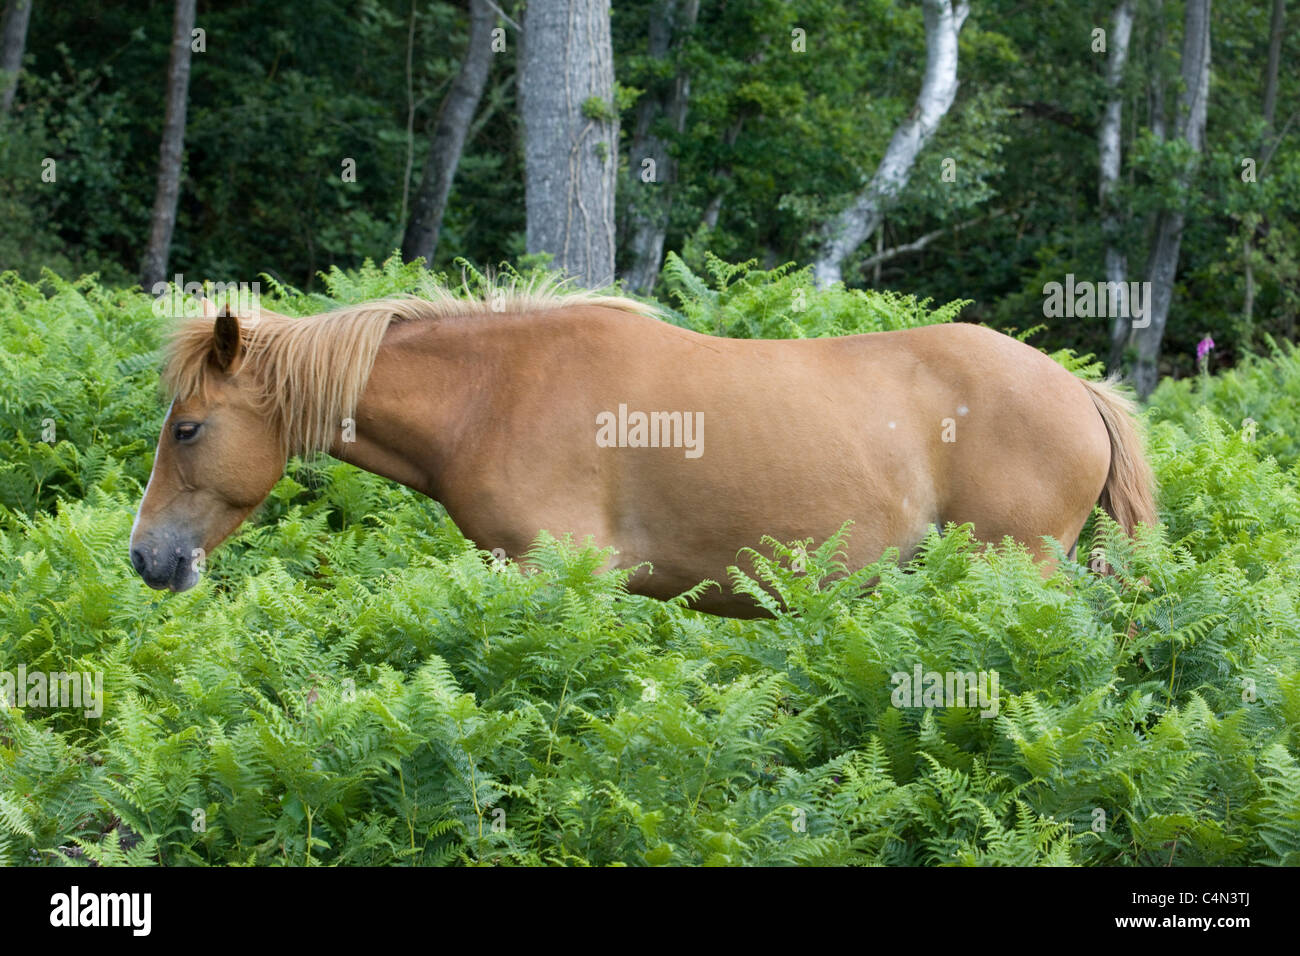 New Forest pony Equus Ferus Caballus Stock Photo